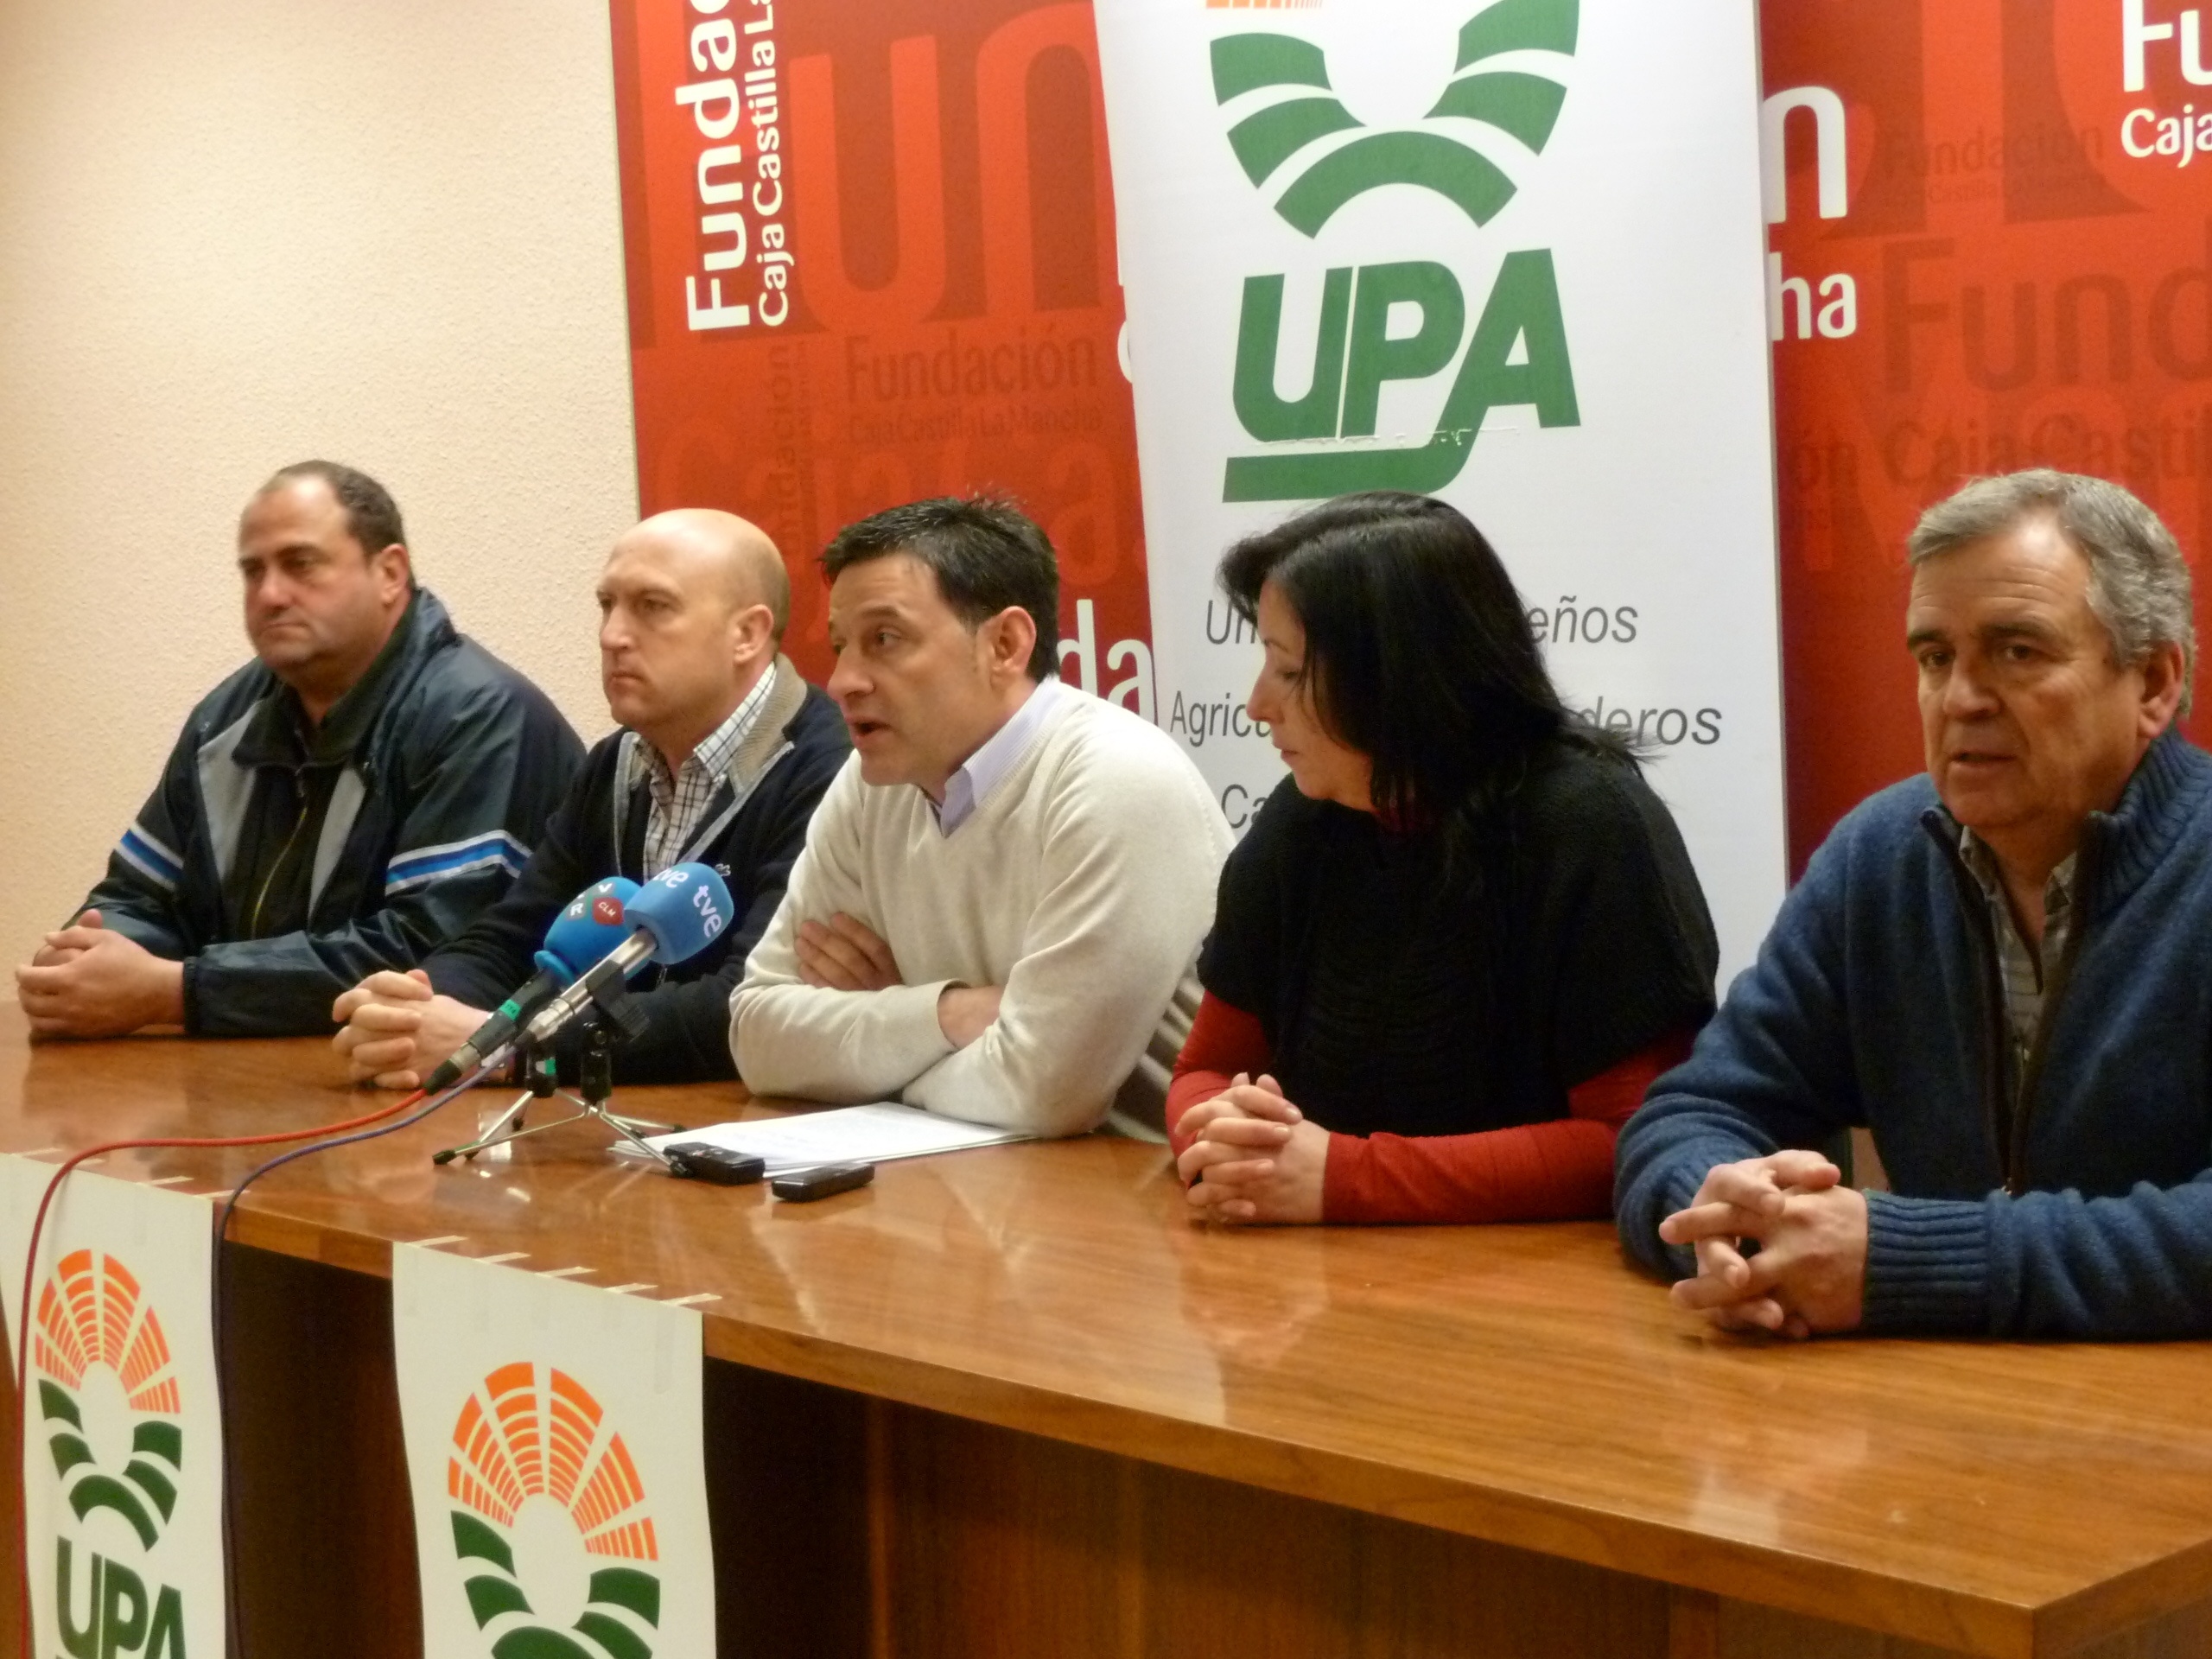 Unos 600 agricultores de UPA C-LM participarán en una concentración contra la PAC el próximo 21 de enero en Madrid